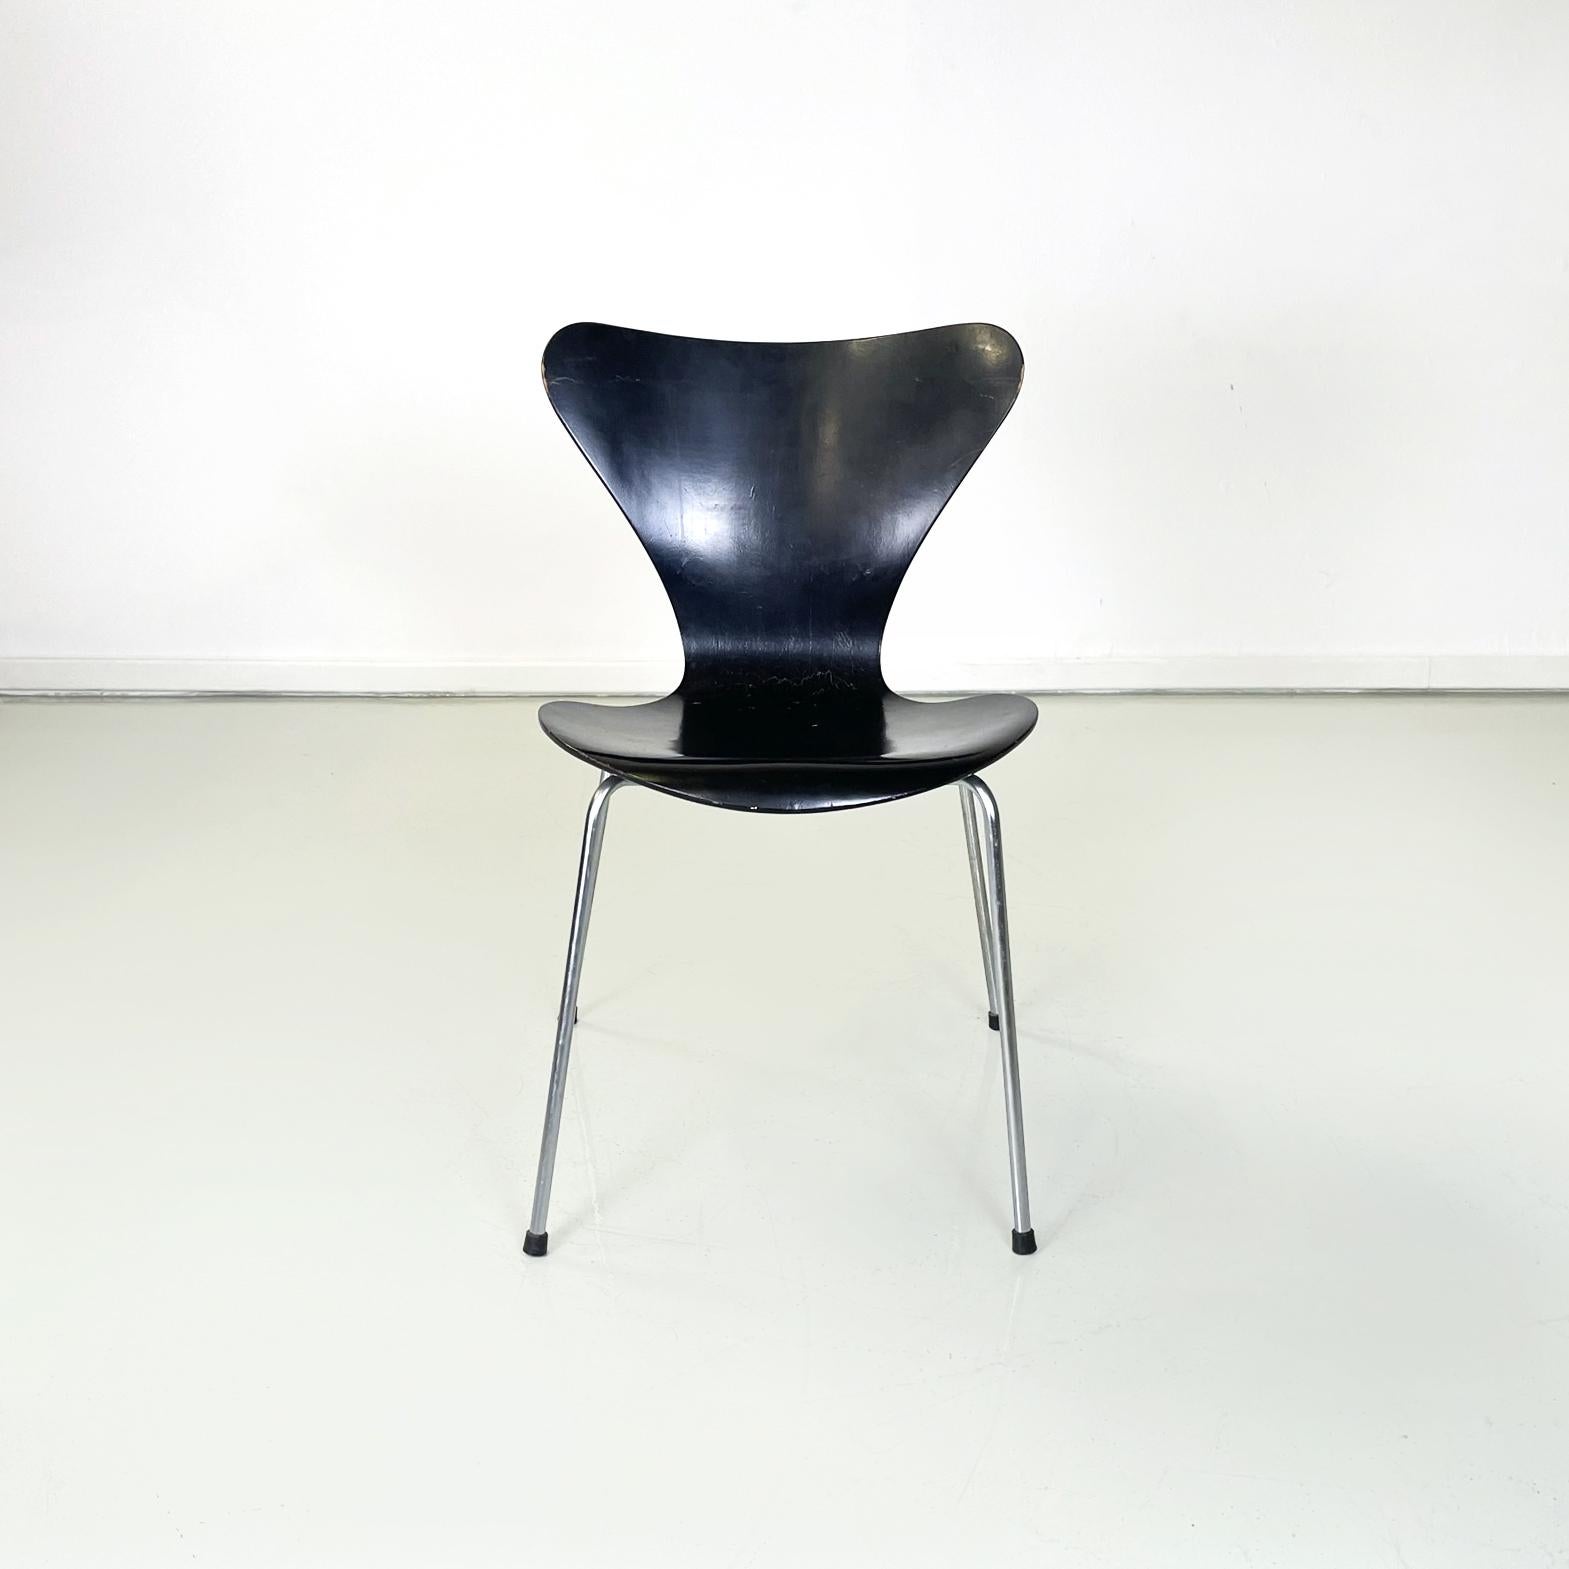 Chaises modernes danoises en bois noir Série 7 par Jacobsen pour Fritz Hansen, 1970
Ensemble de 4 chaises danoises mod. 0465 ou Série 7 en bois peint en noir. Les jambes sont en acier avec des pieds en caoutchouc noir.
Ils ont été produits par Fritz